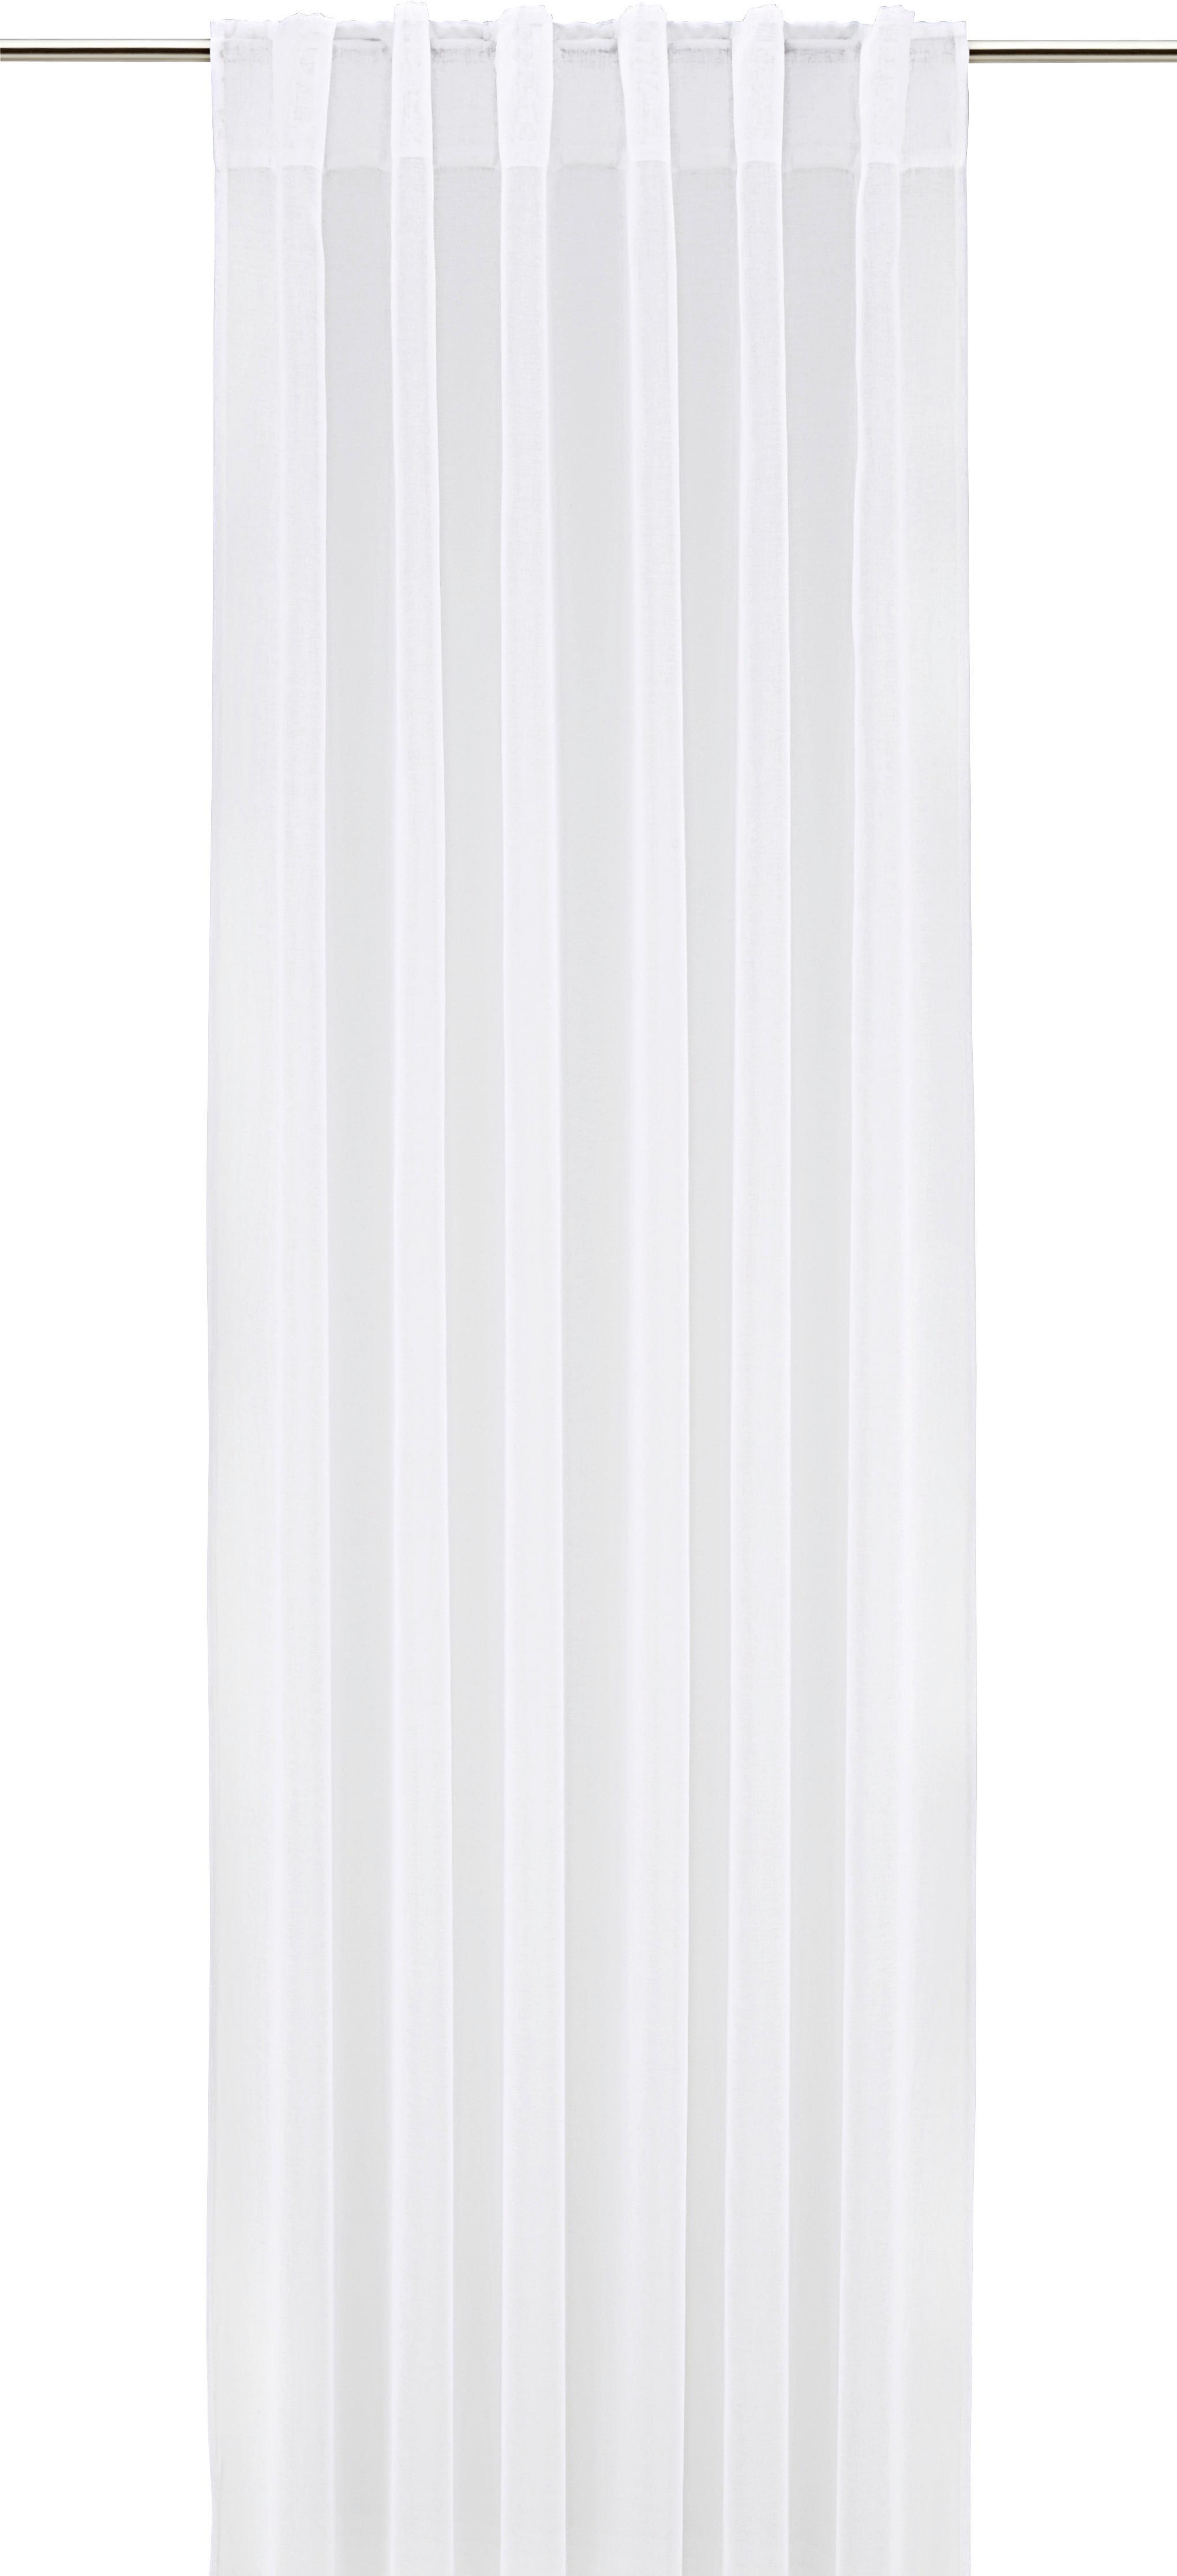 Készfüggöny Tosca 2db 140/245cm - Fehér, Textil (140/245cm) - Modern Living